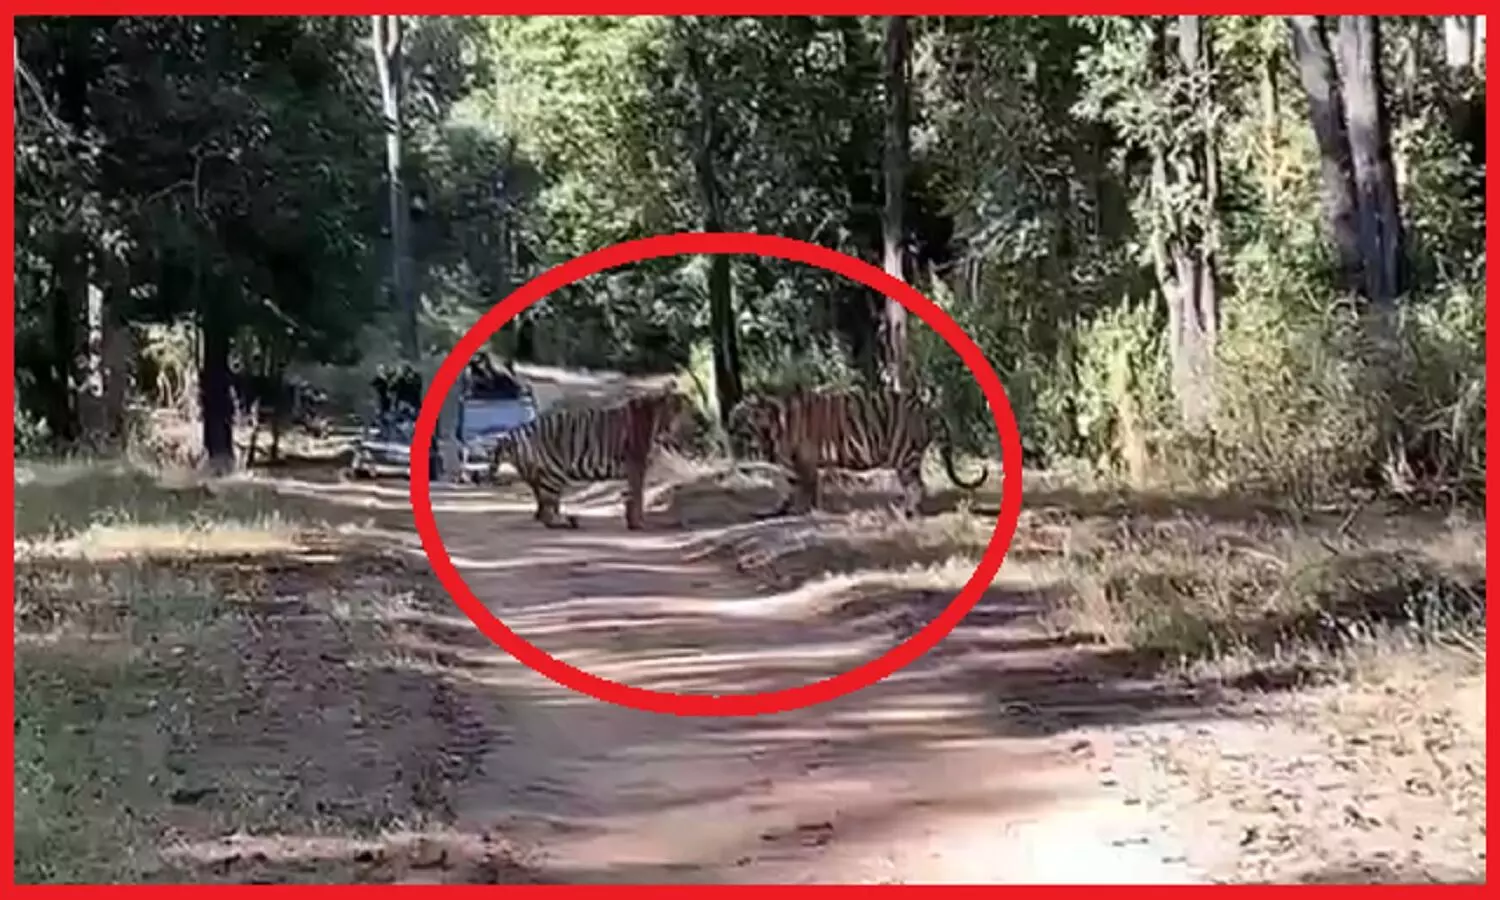 Tigers fight : दो बाघों की जबर्दस्त भिड़ंत, जब दूसरे बाघ ने की अतिक्रमण की कोशिश तो खूंखार हो गया जंगल का राजा